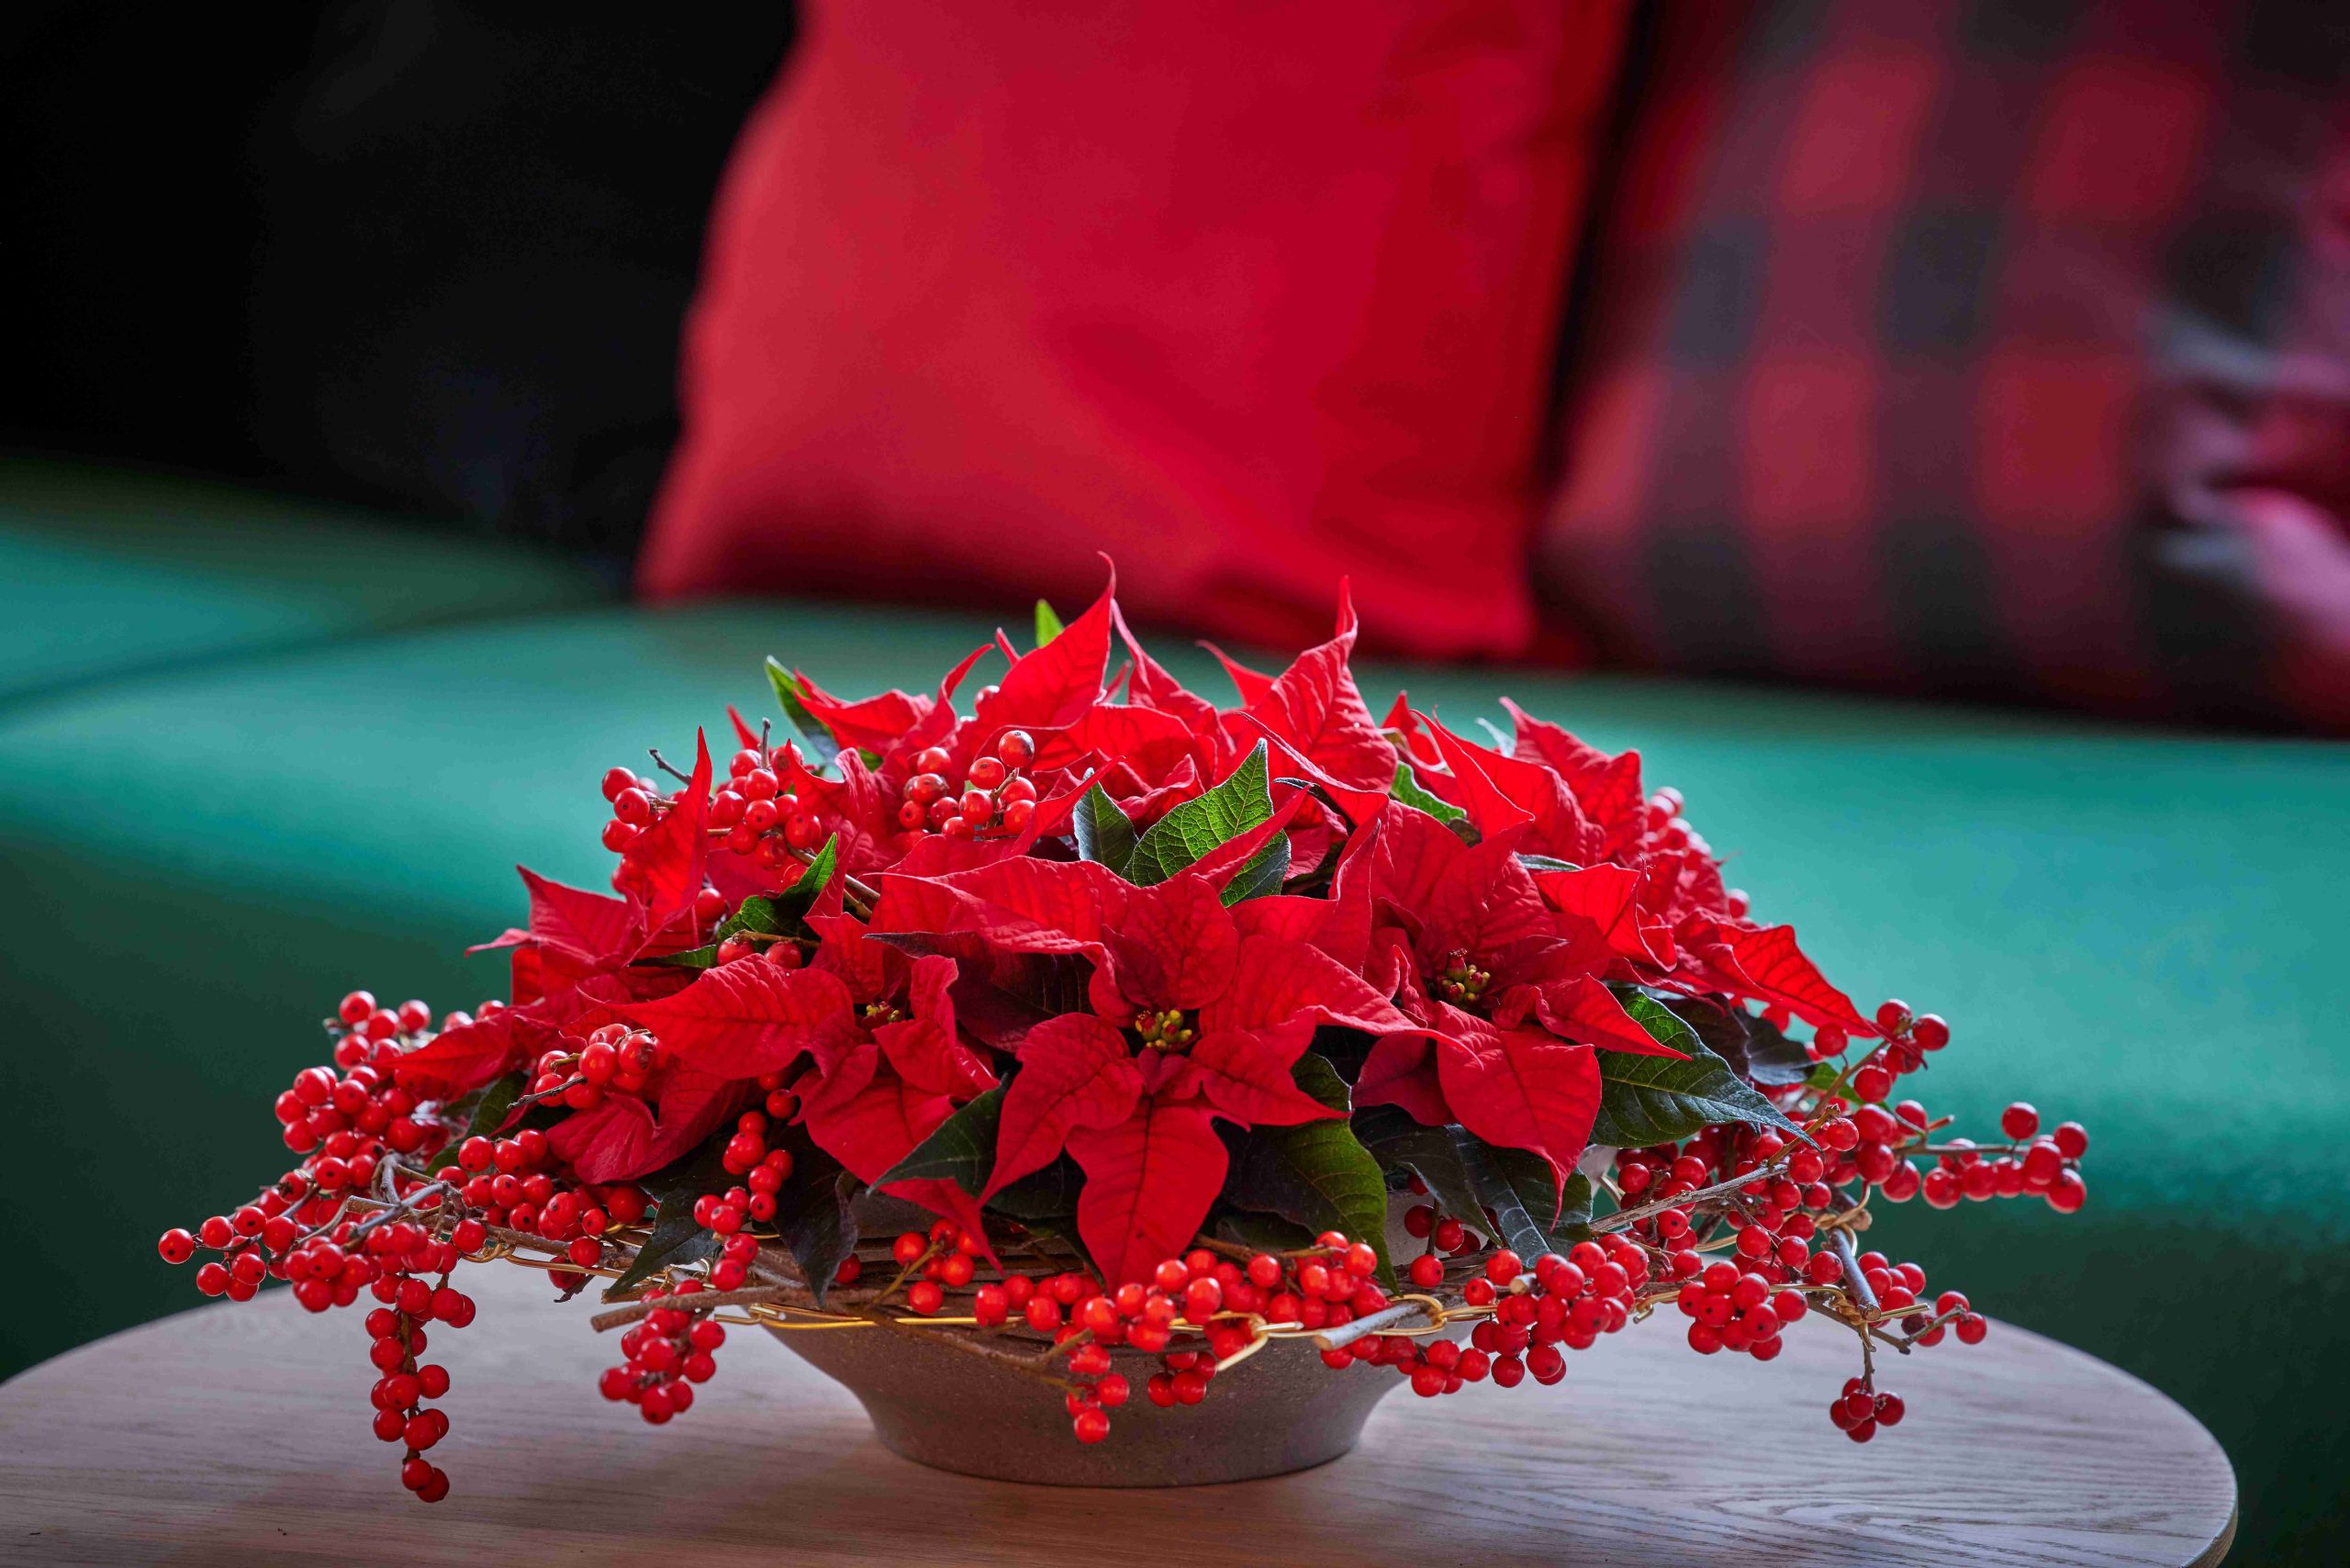 Így dekoráld az otthonodat az ünnepekre, ha még virágzik a mikulásvirágod